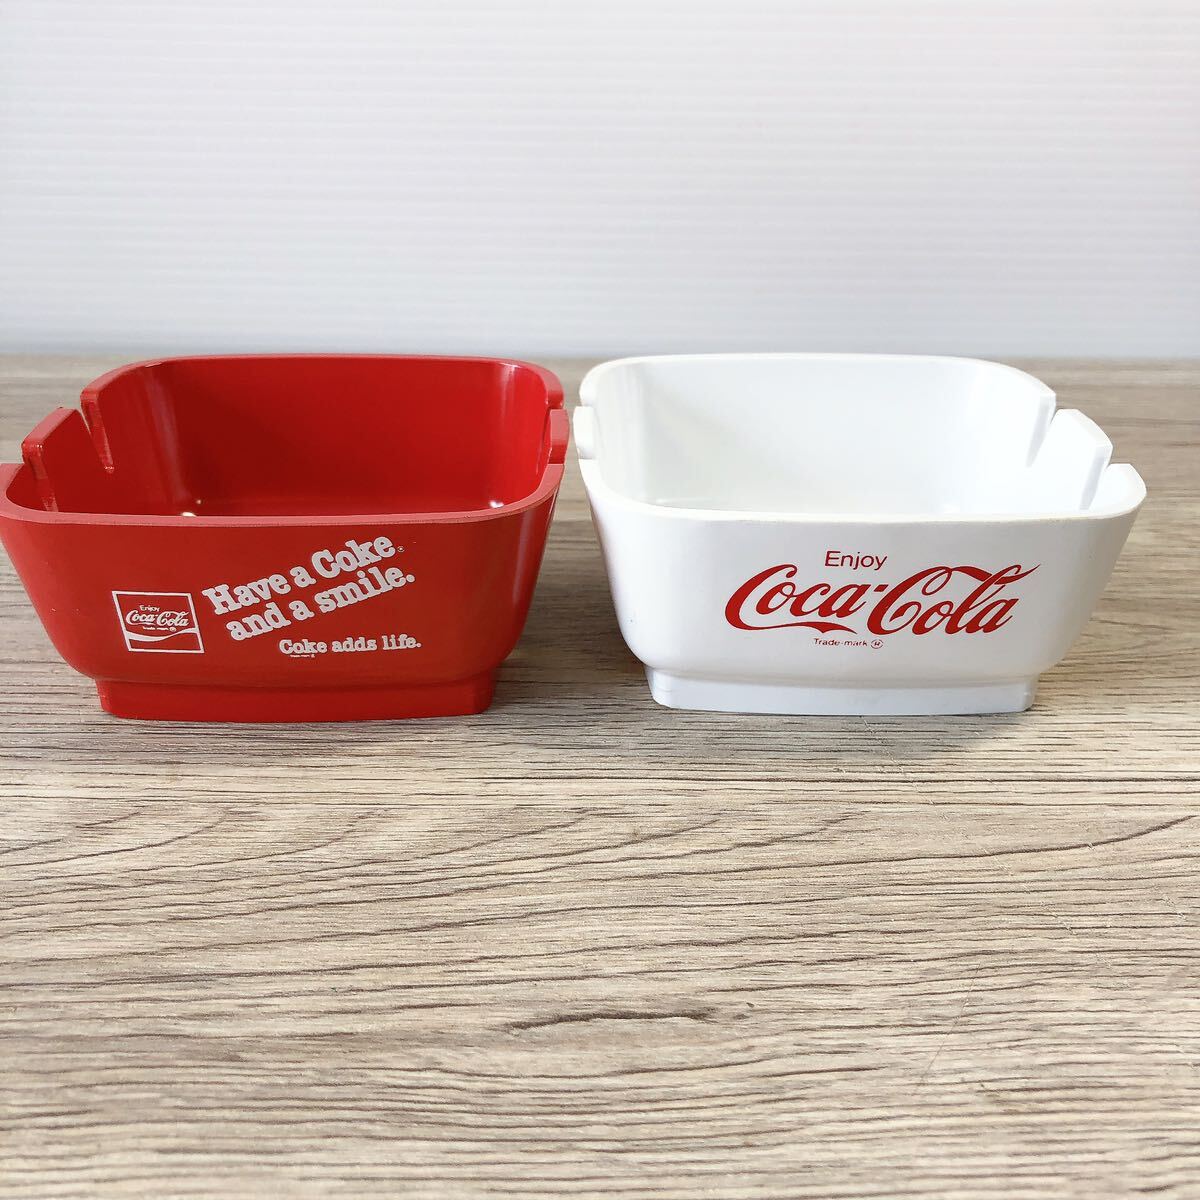 コカコーラ Coca-Cola アッシュトレイ プレート 灰皿 缶 小物入れ アメリカ製 海外 コカコーラグッズ コレクション レトロ雑貨 海外雑貨の画像4